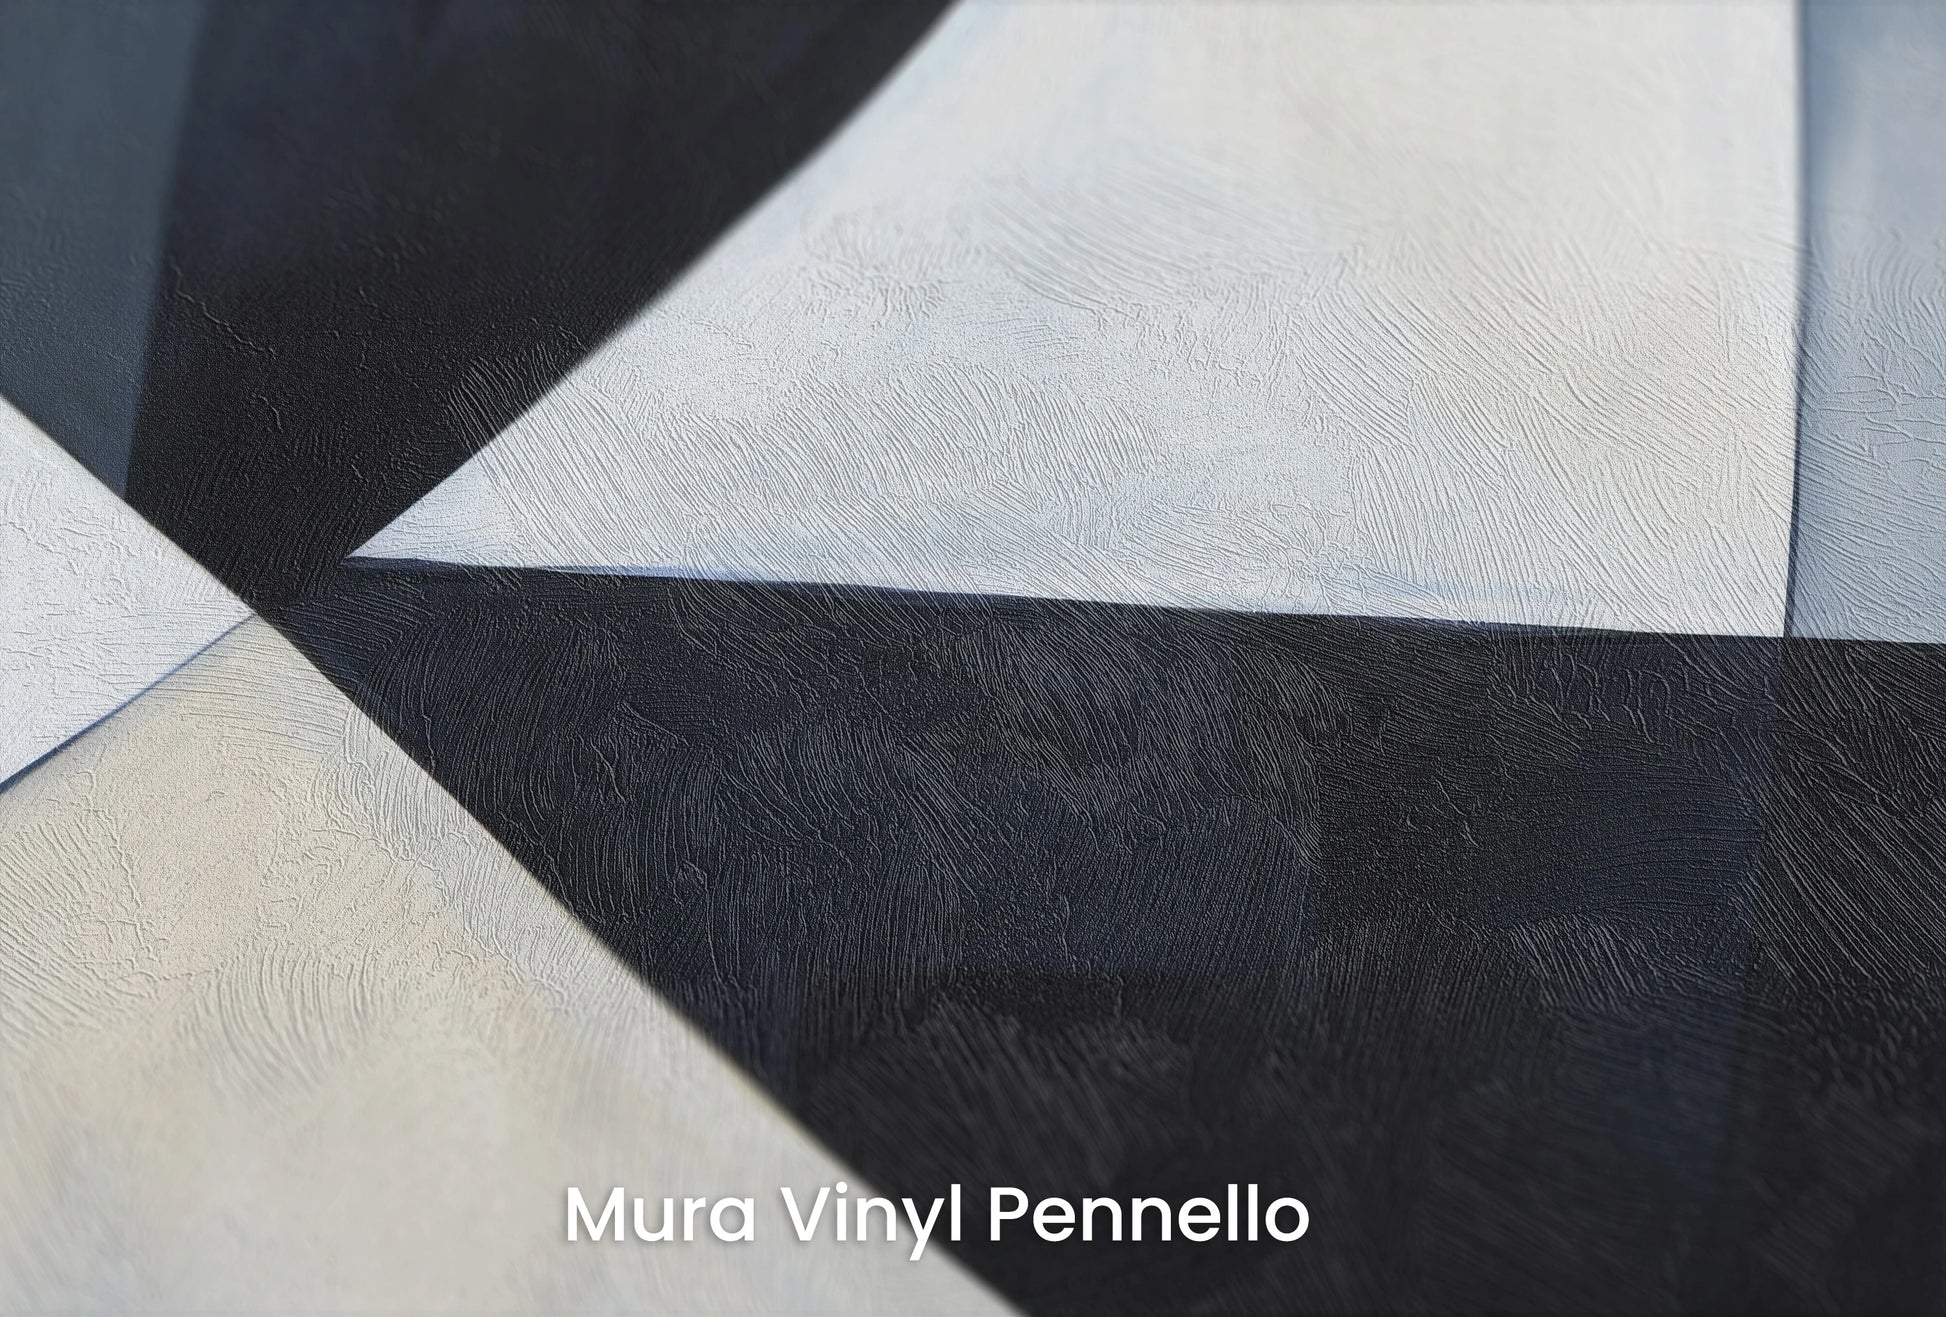 Zbliżenie na artystyczną fototapetę o nazwie Monochrome Sails na podłożu Mura Vinyl Pennello - faktura pociągnięć pędzla malarskiego.